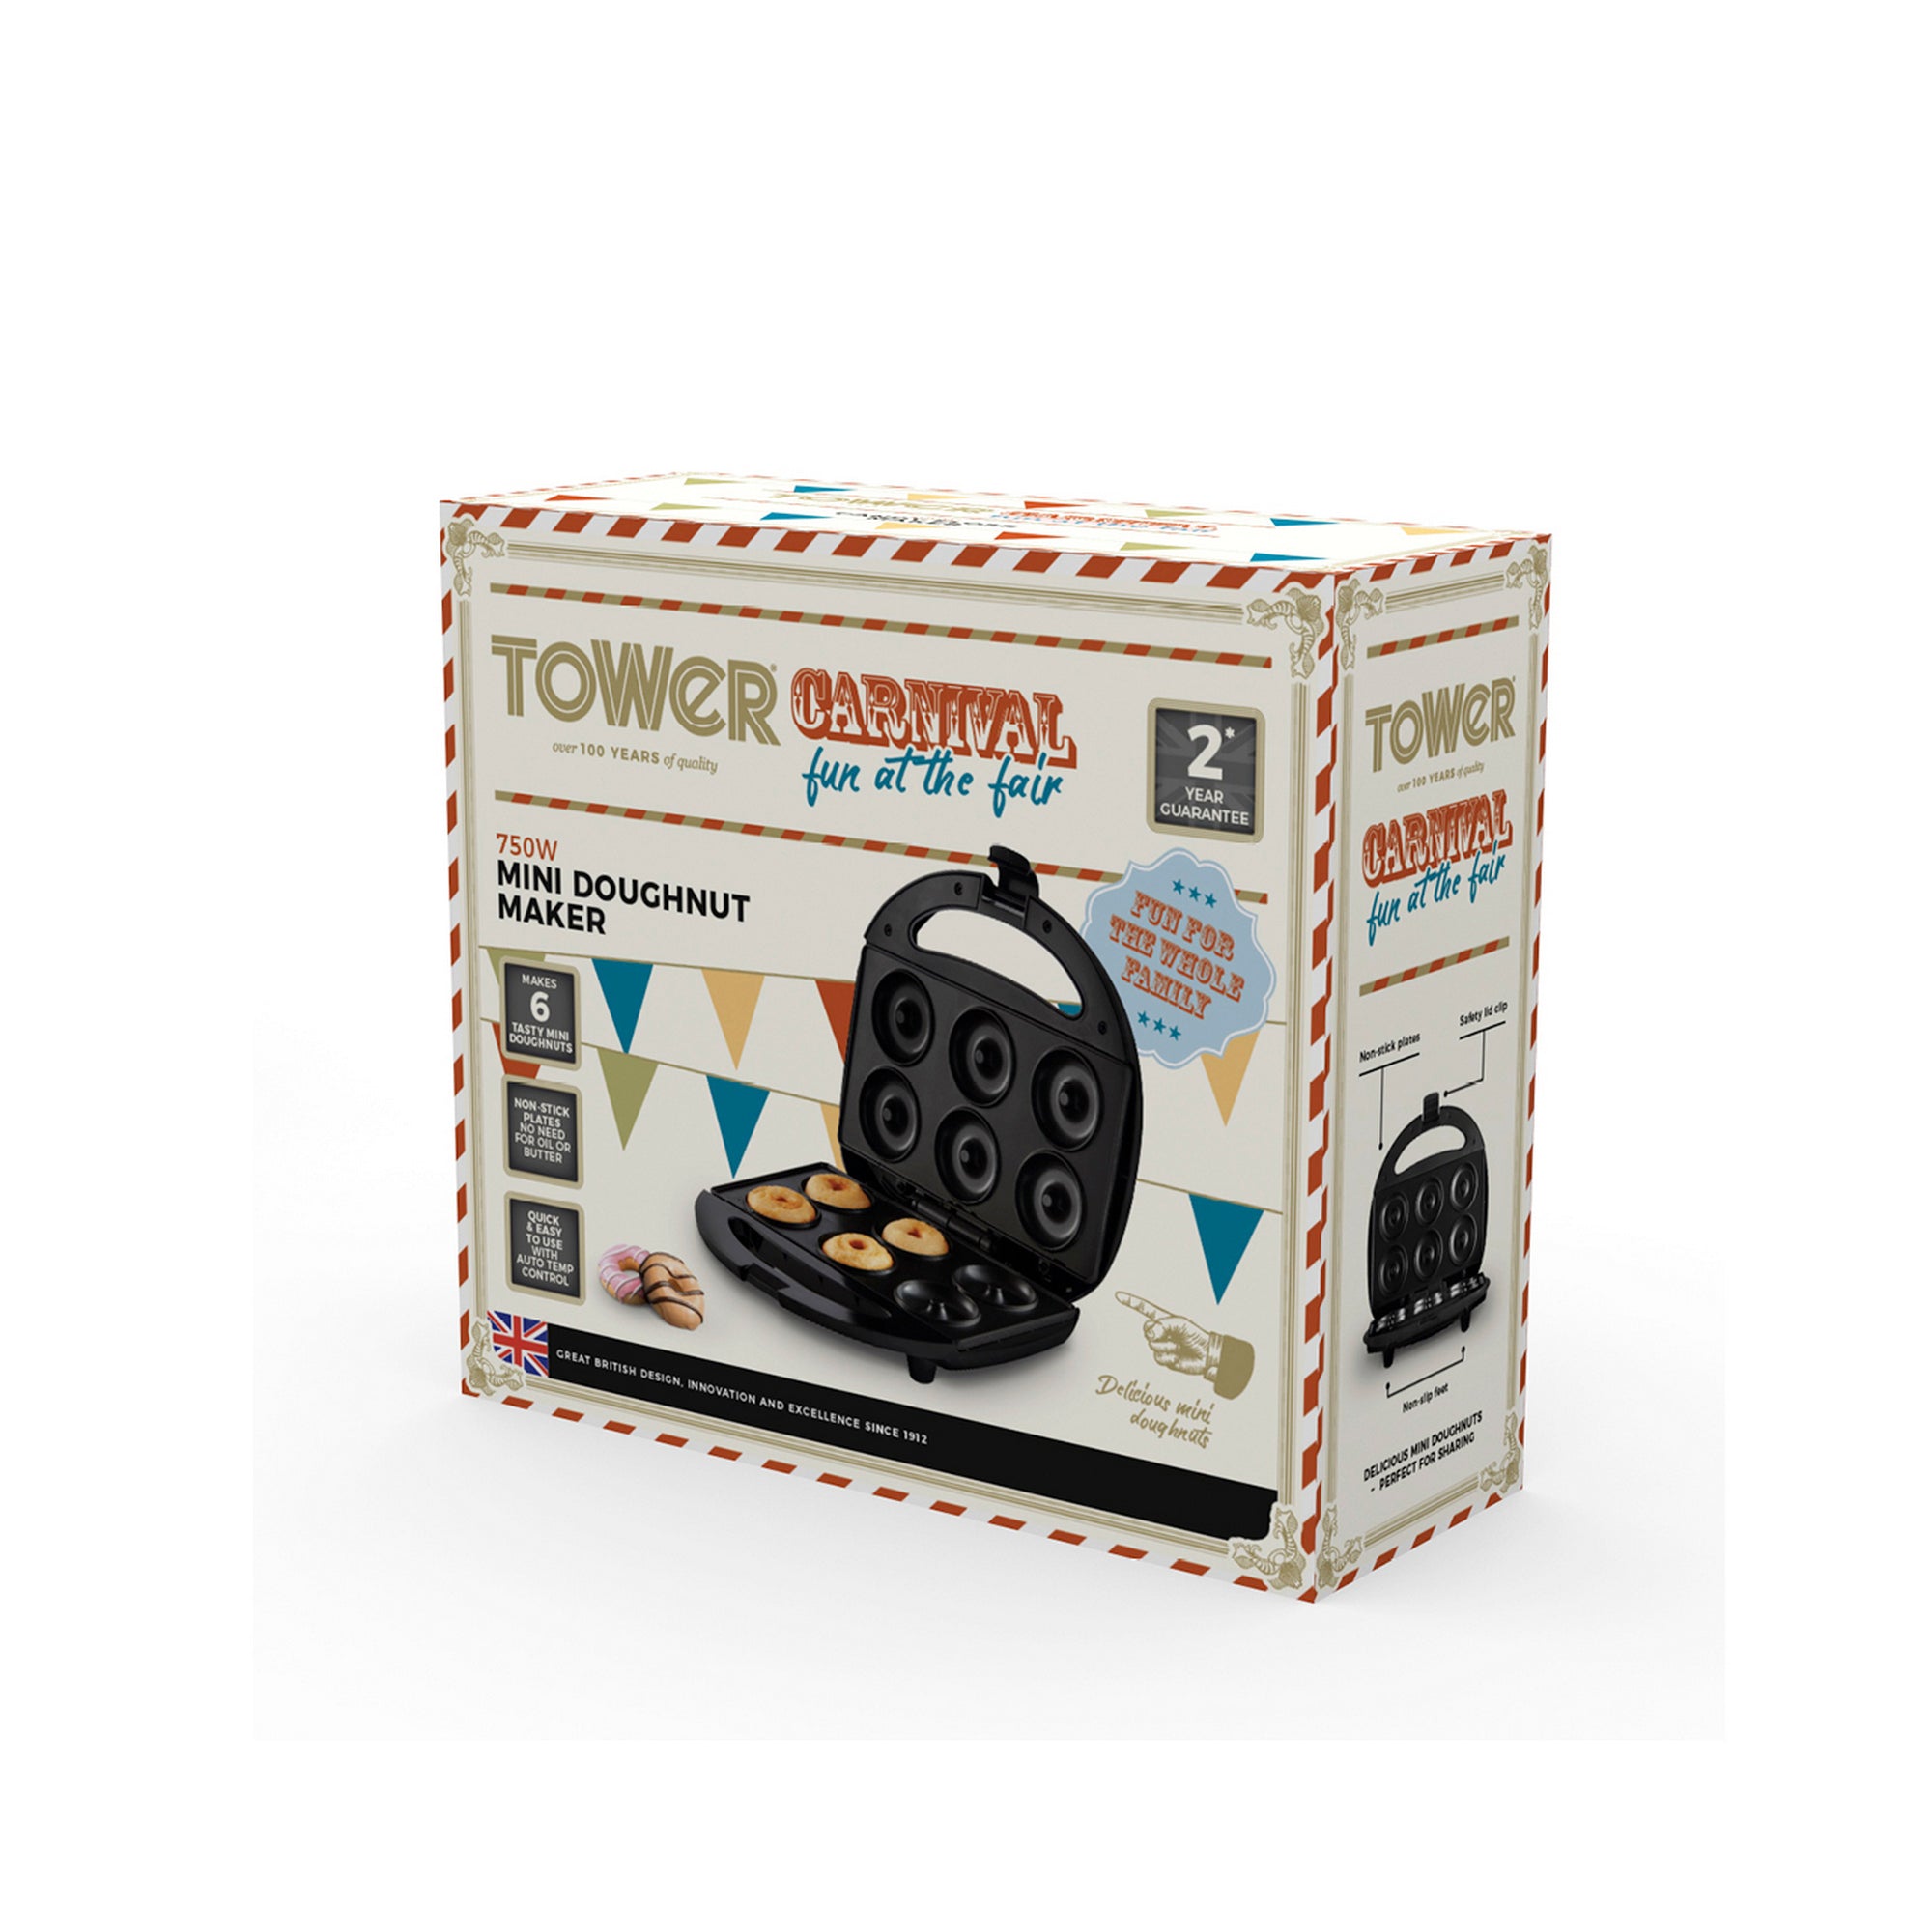 Tower 750W Mini Donut Maker Box